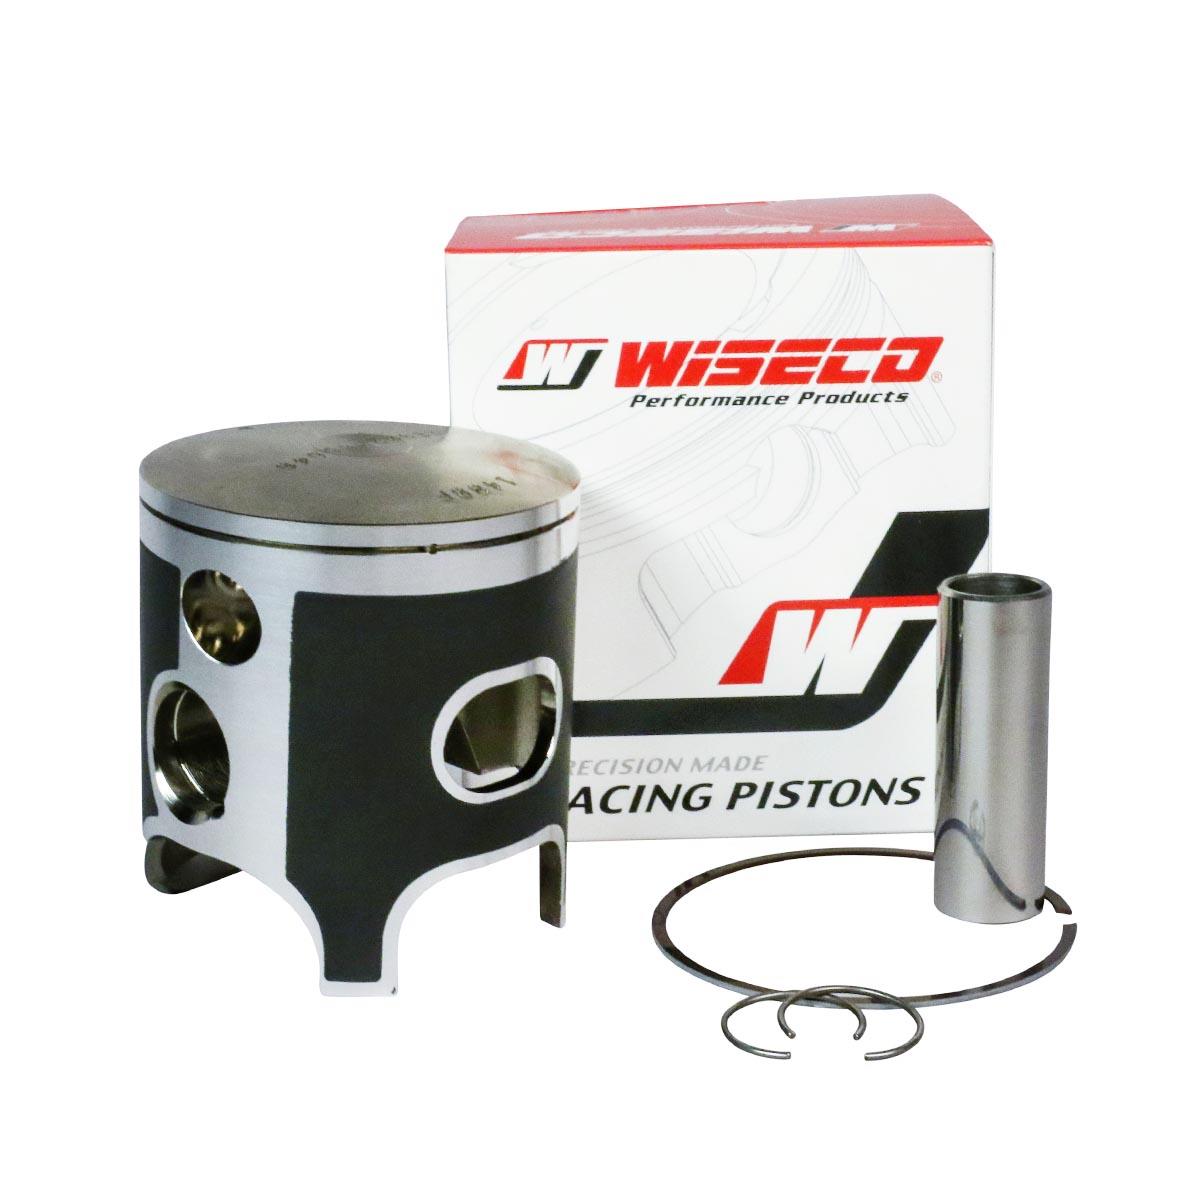 Wiseco Kit Pistone Racer Elite Honda CR-F 250 18-19, Alta Compressione